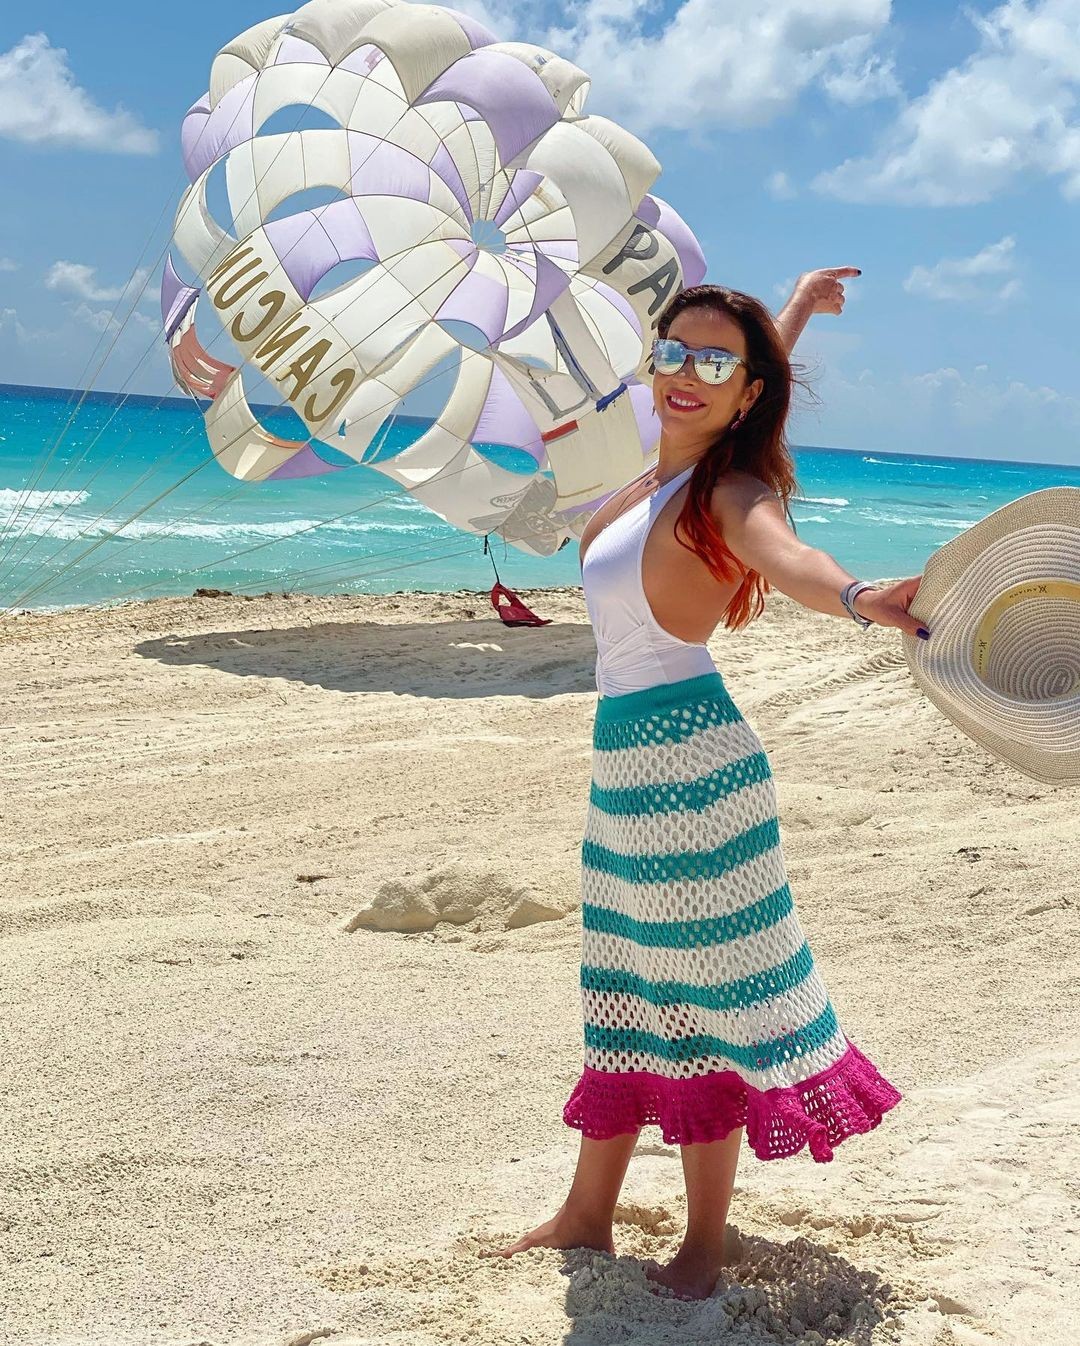 Renata Dominguez posa em cenário paradisíaco em Cancún (Foto: Reprodução / Instagram)